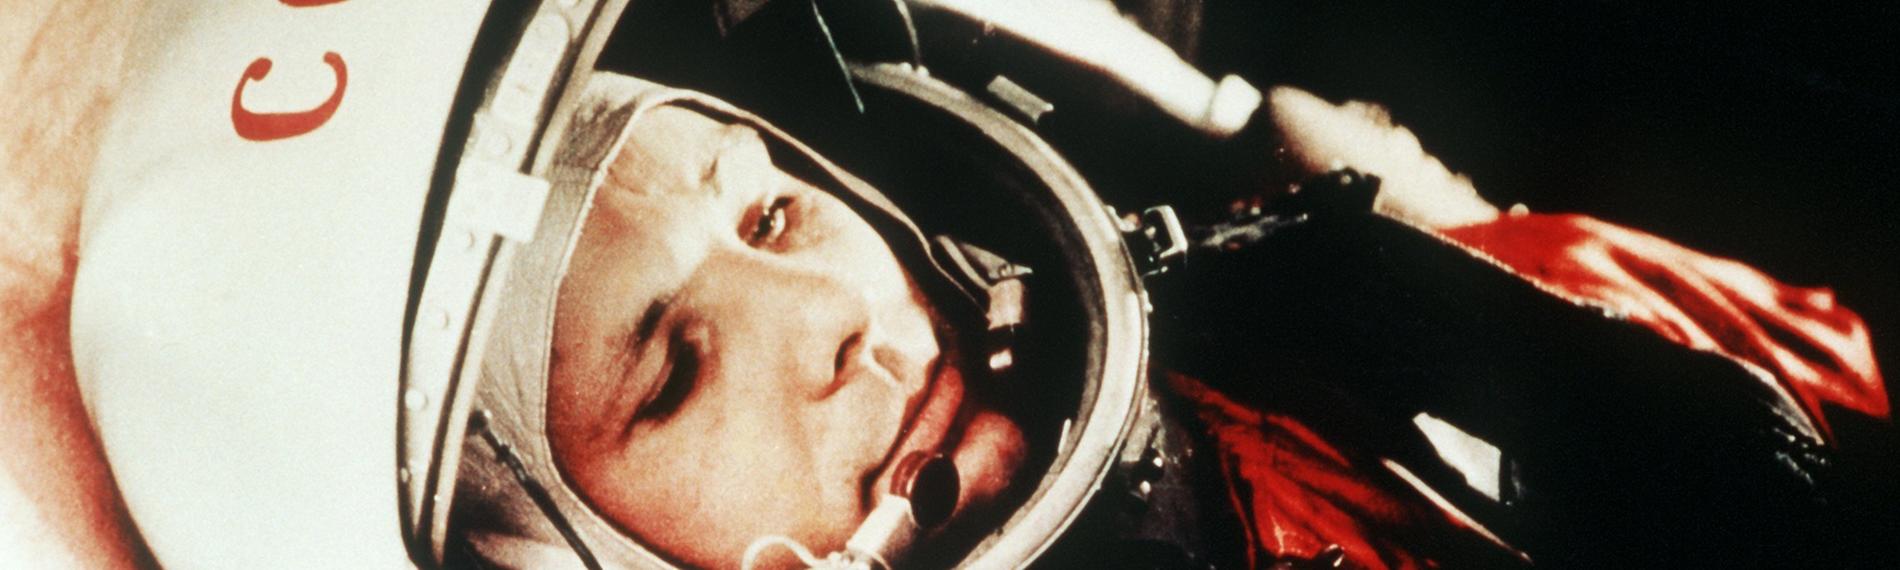 Russischer Kosmonaut Juri Gagarin in seinem Raumanzug kurz vor dem Start ins Weltall 